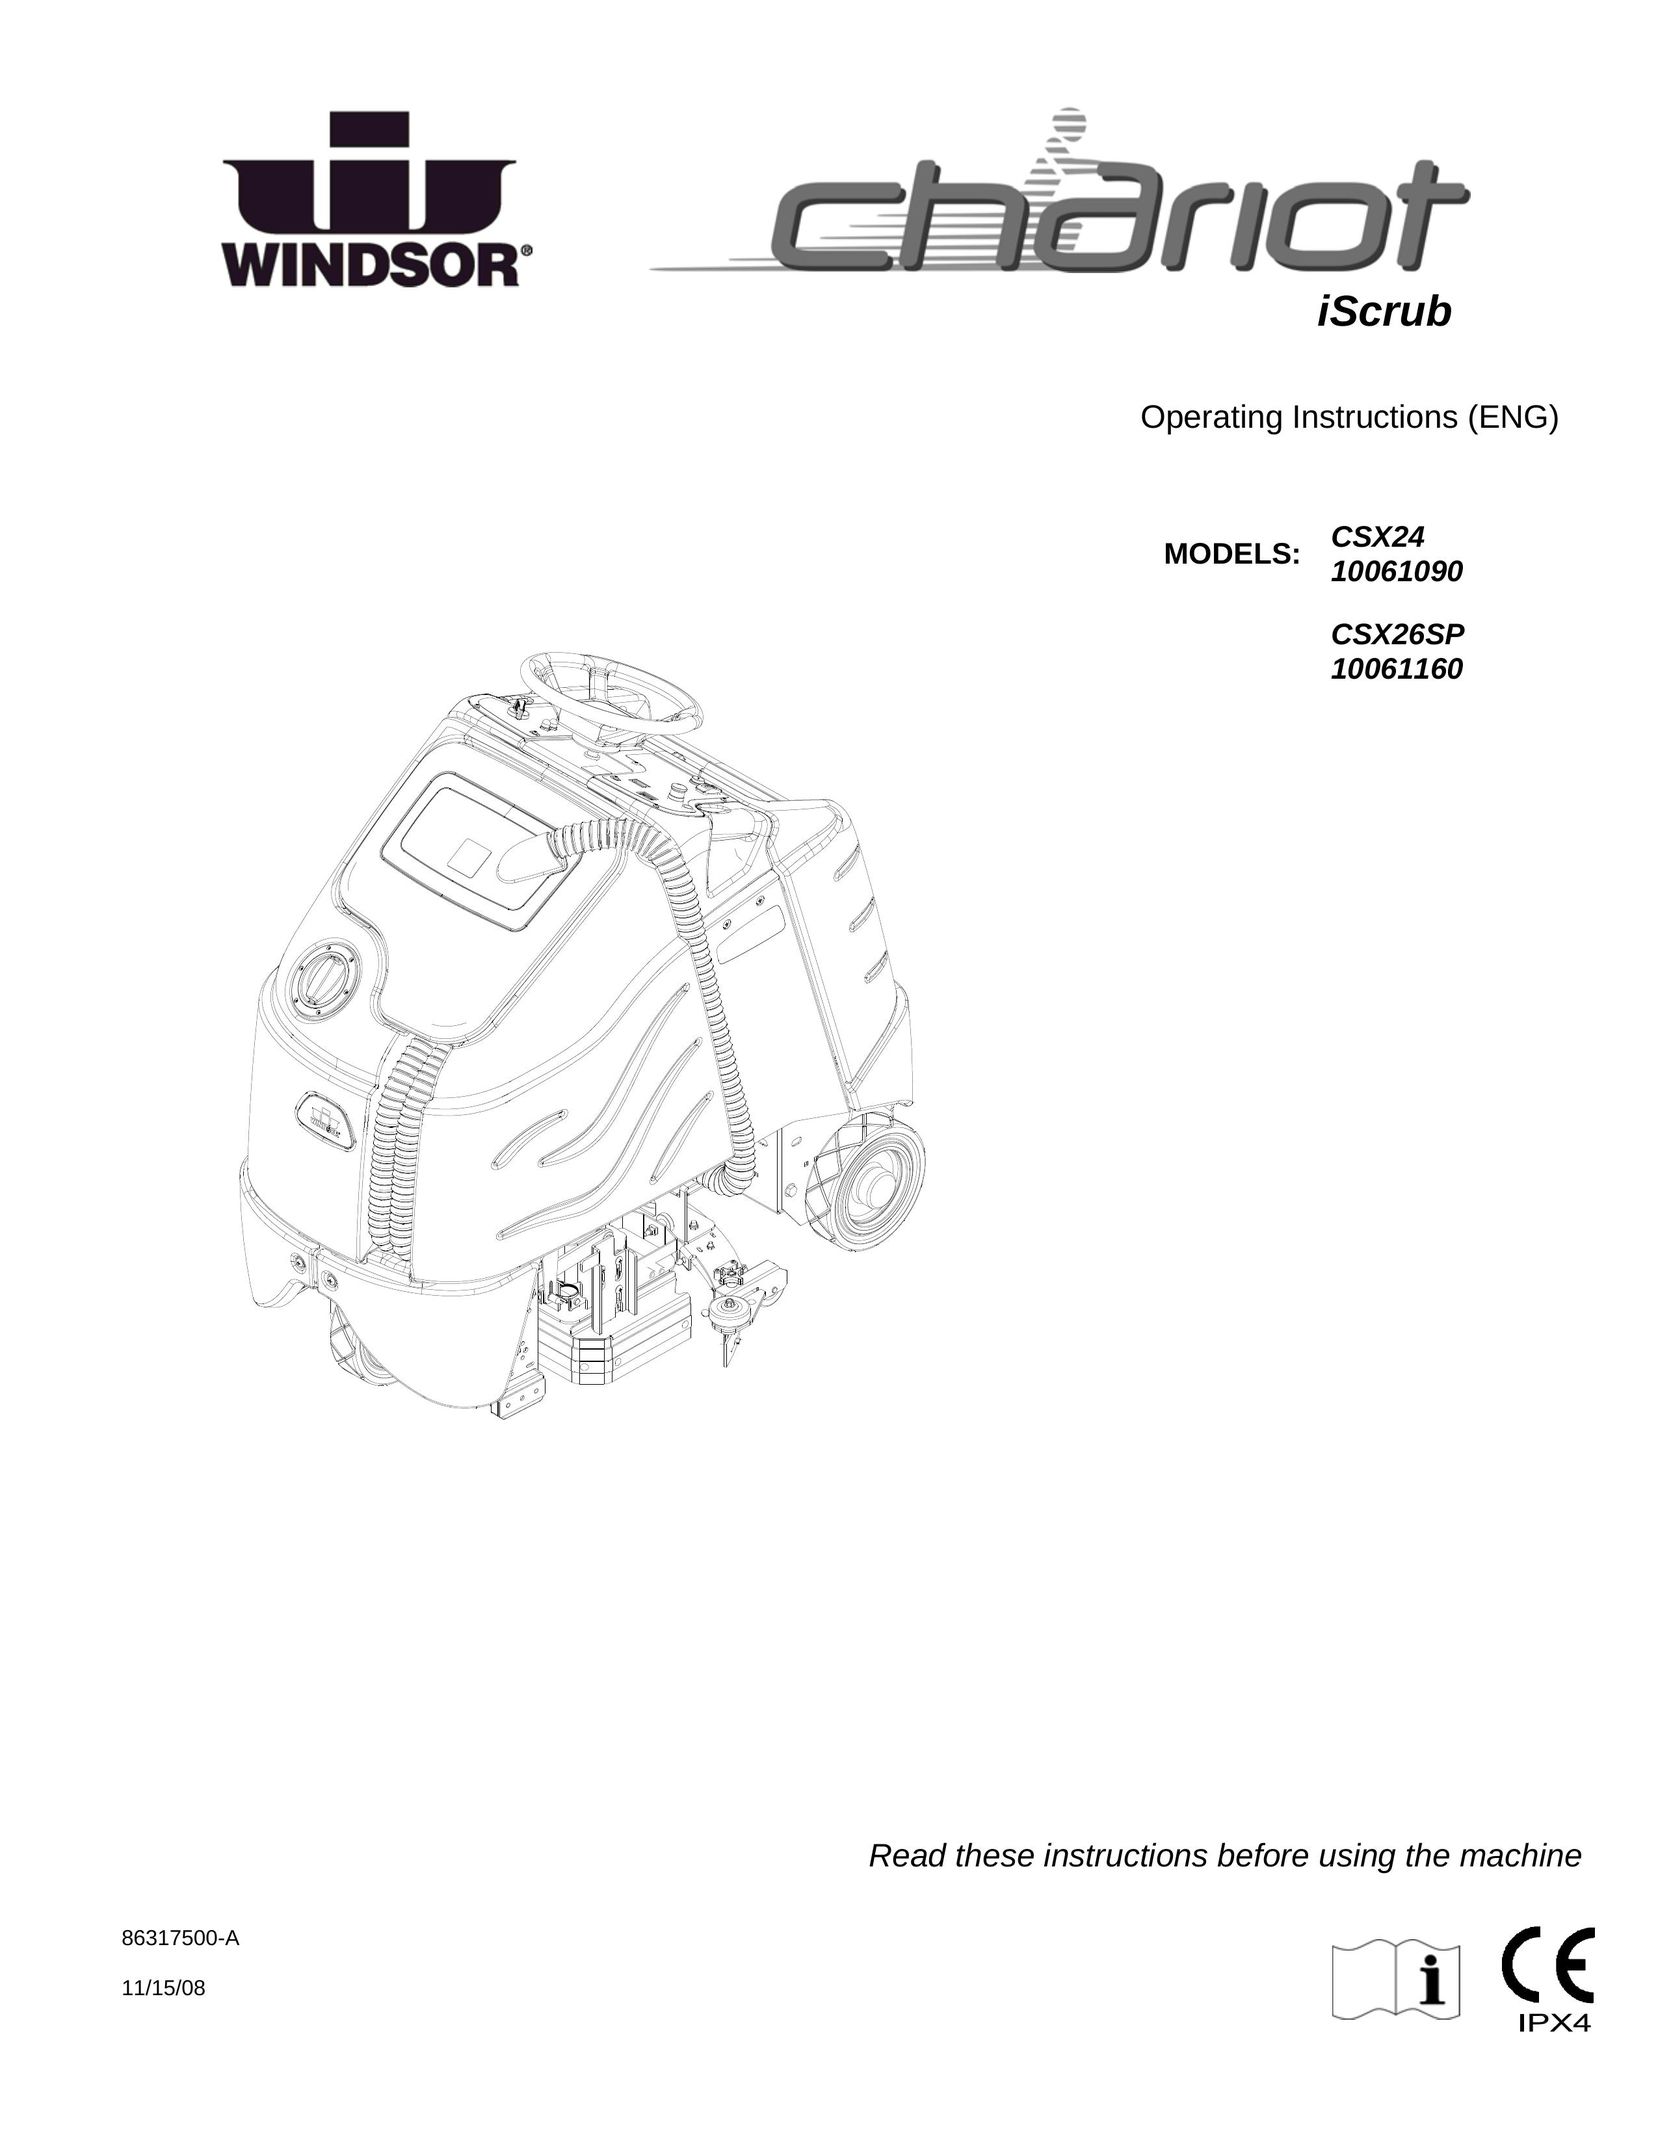 Windsor 10061160 Vacuum Cleaner User Manual